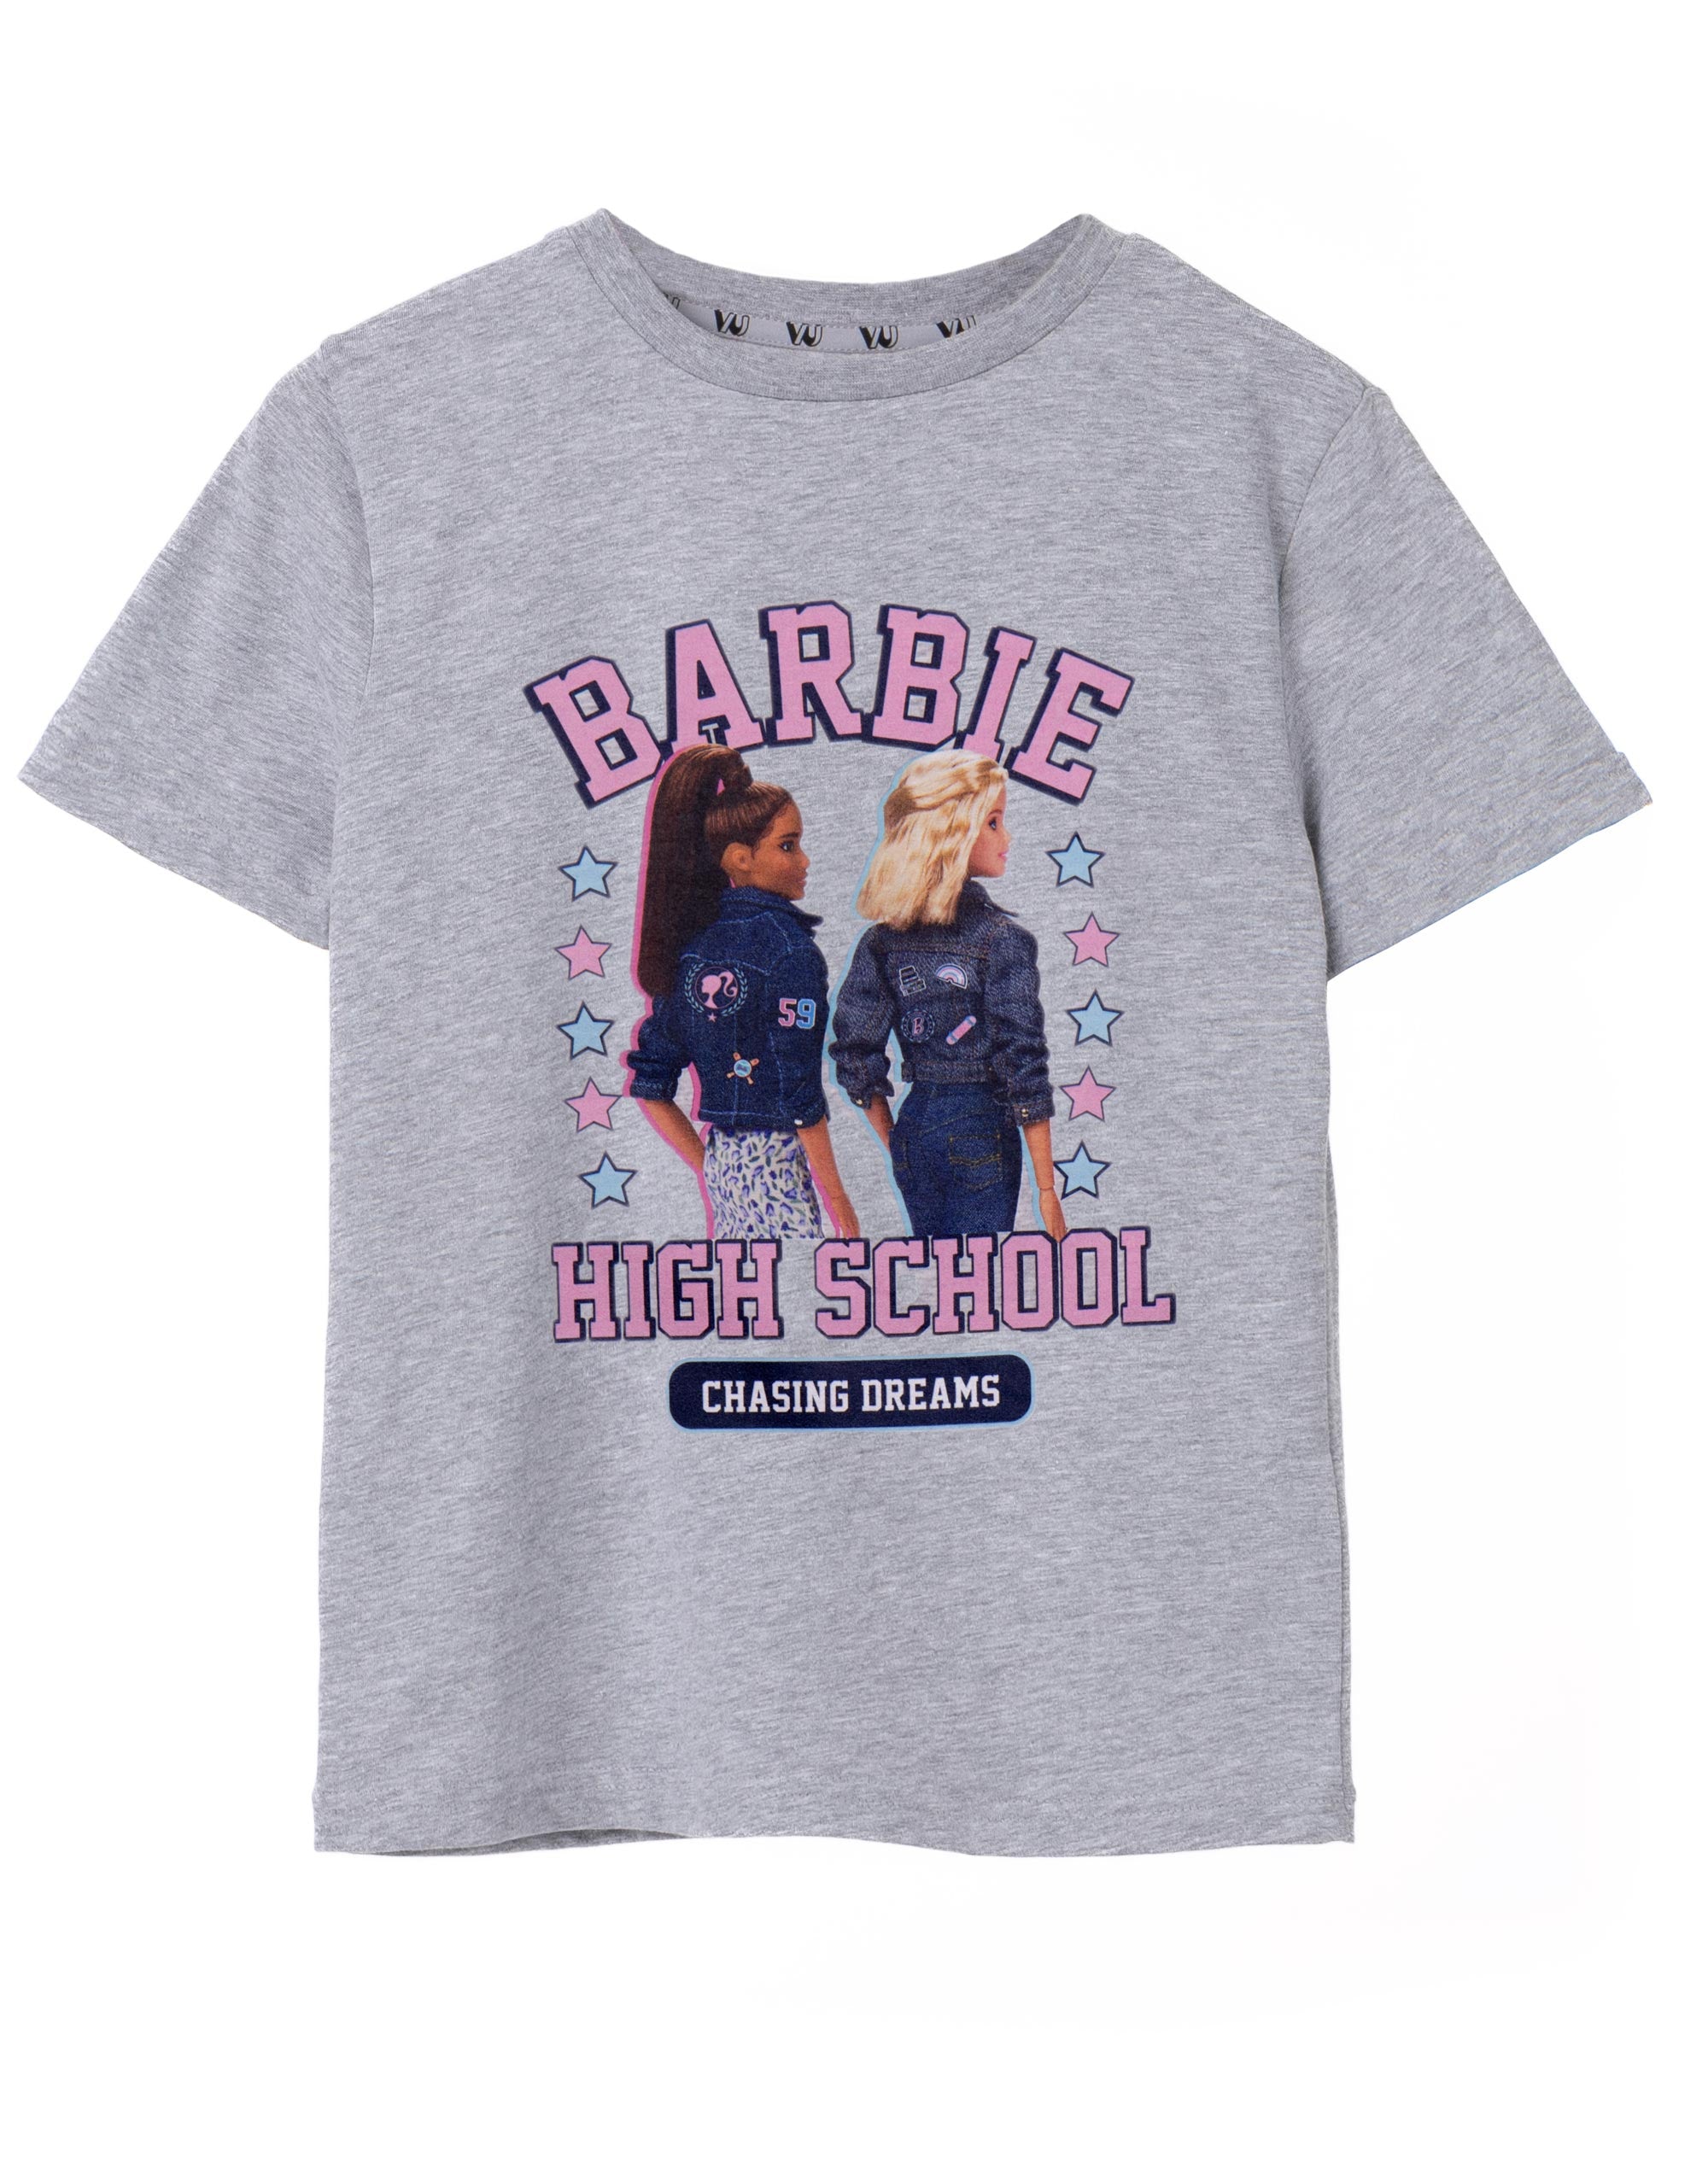 Barbie High School Little Girls T-Shirt